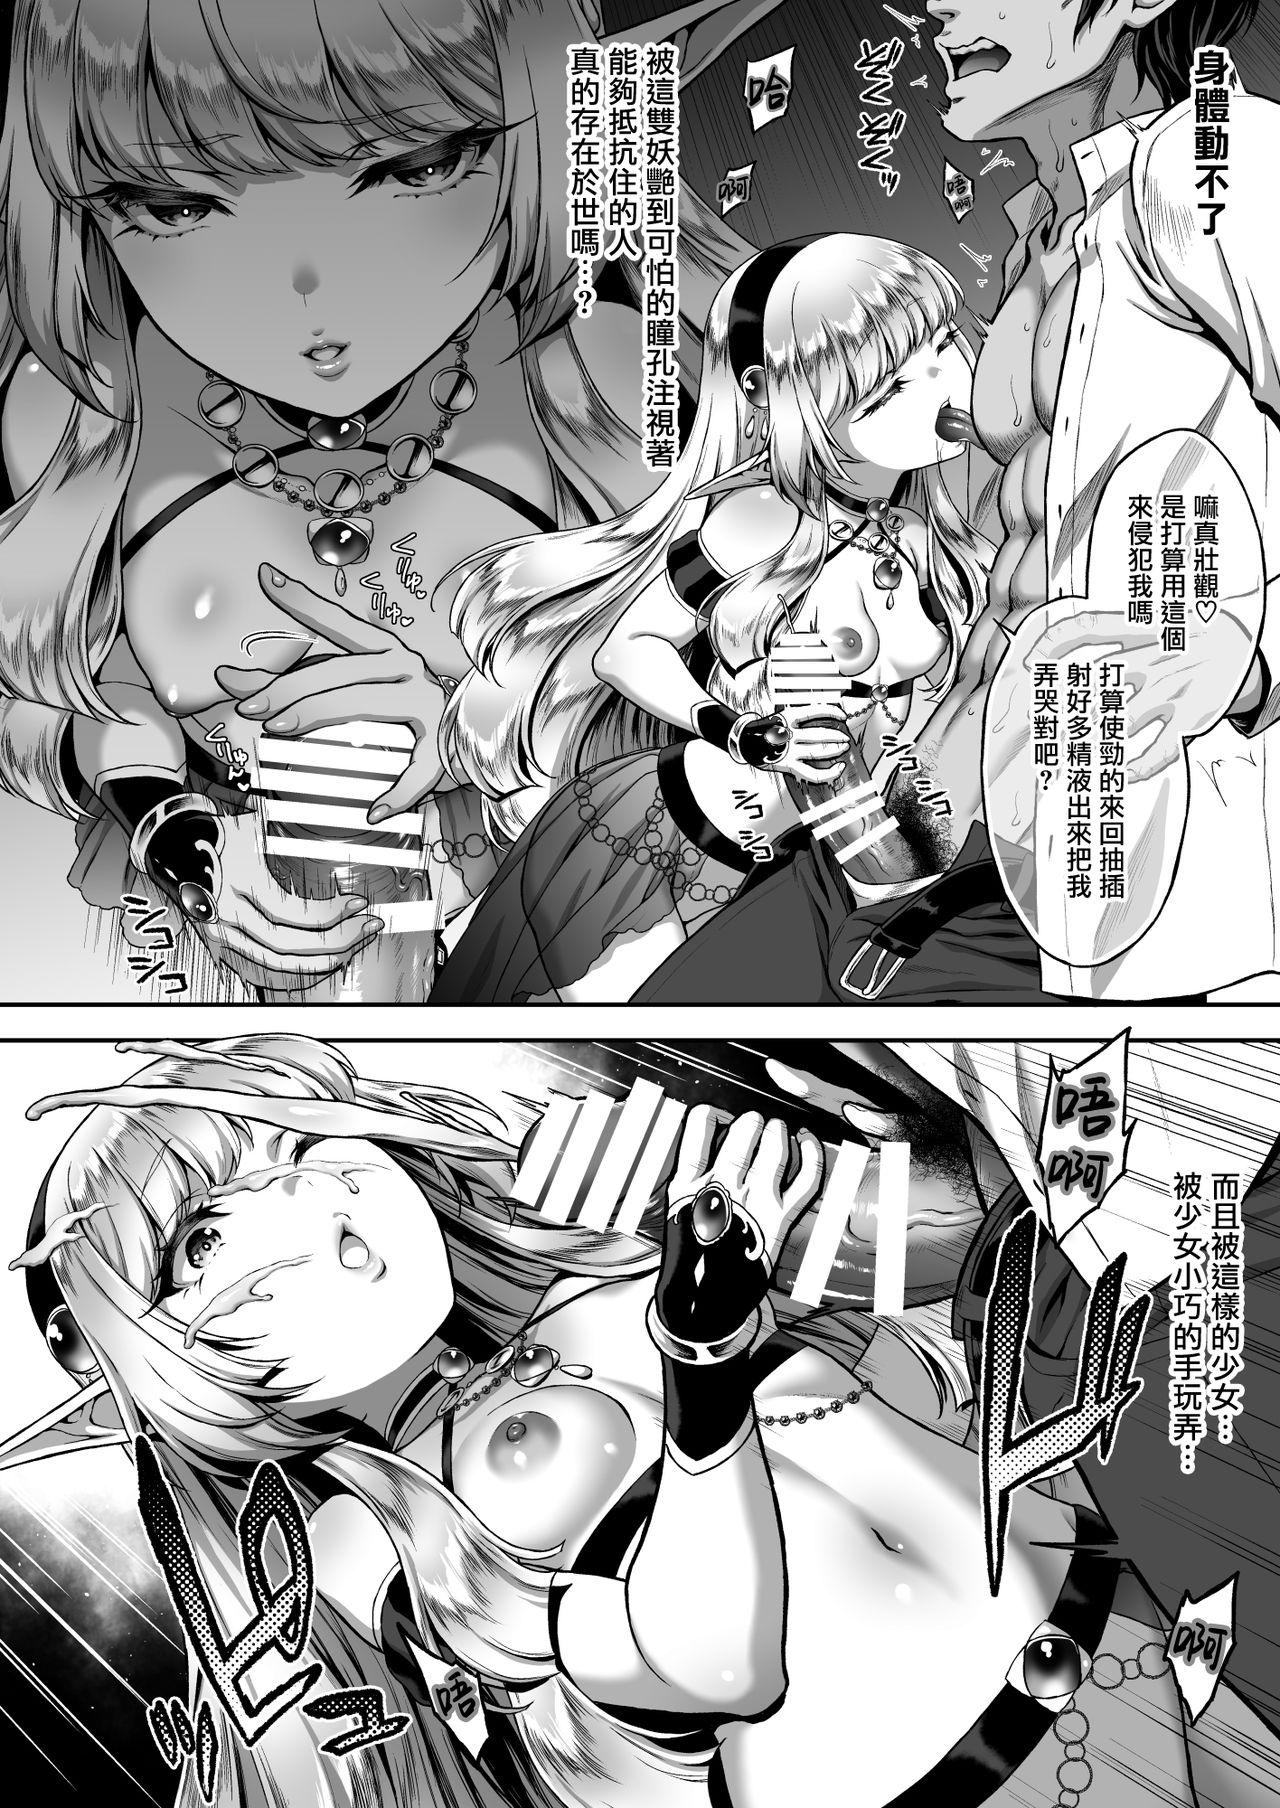 Chacal Yuukyuu no Shou Elf 1 "Dokuhebi" - Original Nurugel - Page 10